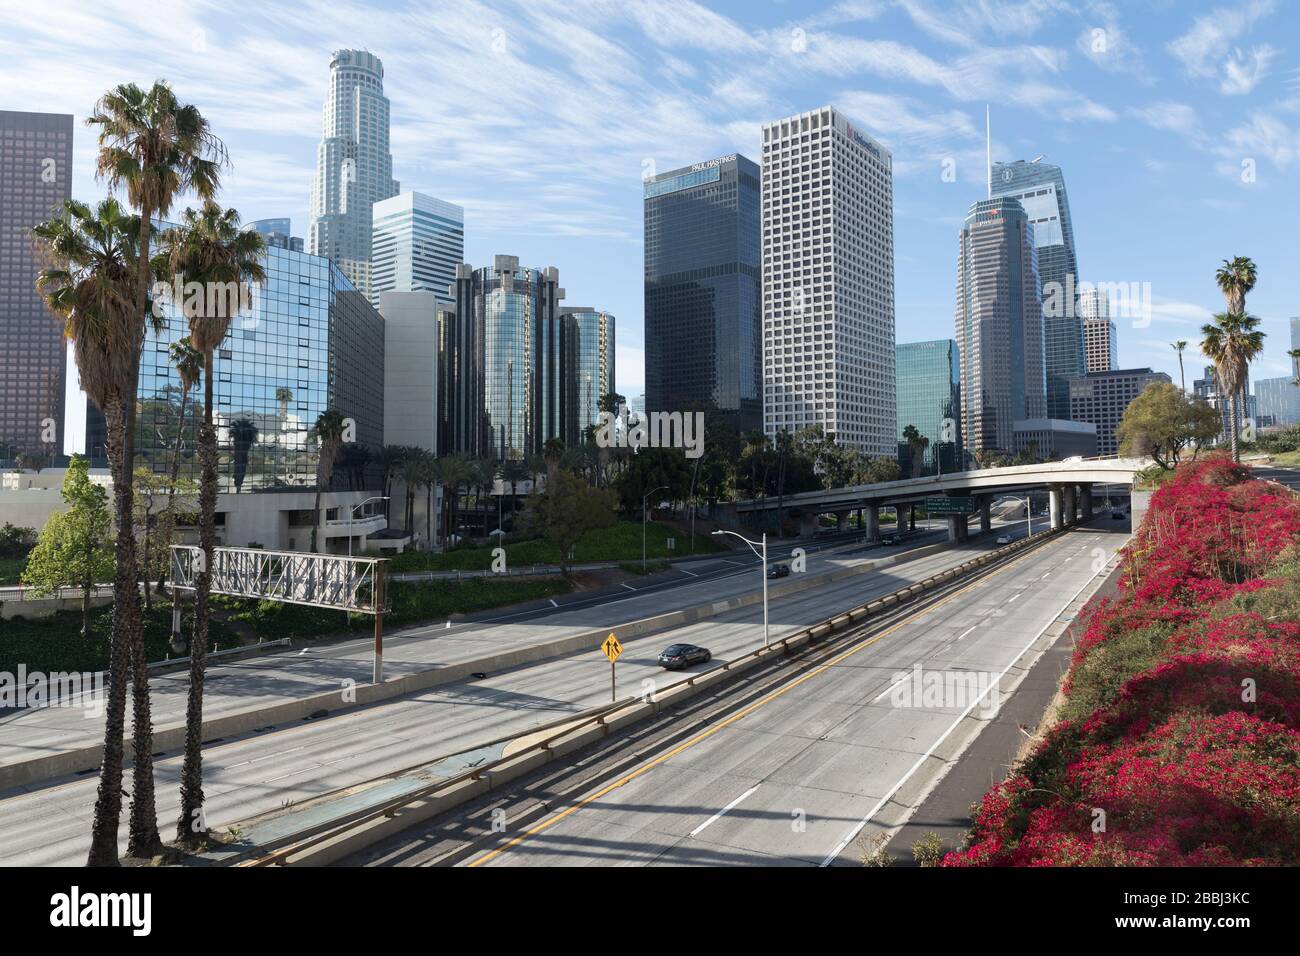 L'autoroute Harbour (State Highway 110) traverse le centre-ville de Los Angeles. 22 mars 2020 verrouillage du coronavirus. Banque D'Images